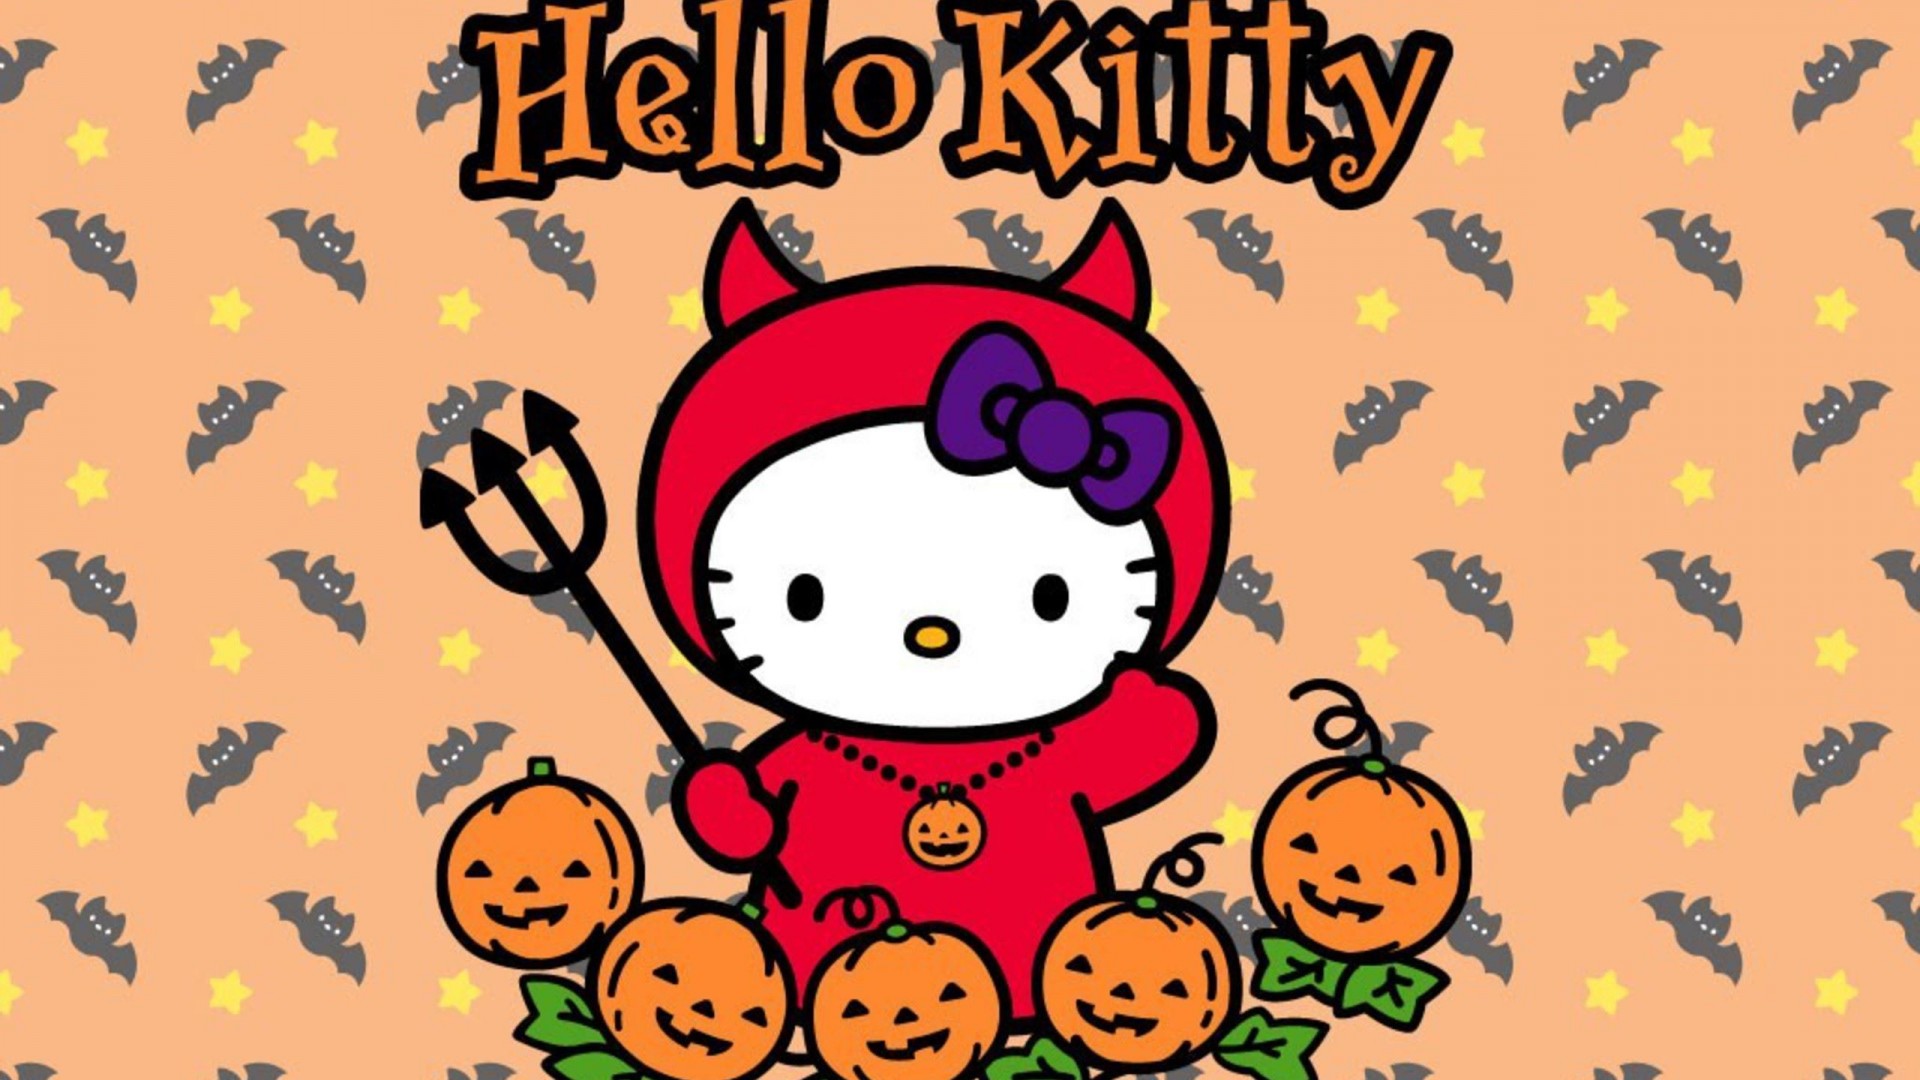 Hello Kitty Halloween Wallpaper Airwallpaper